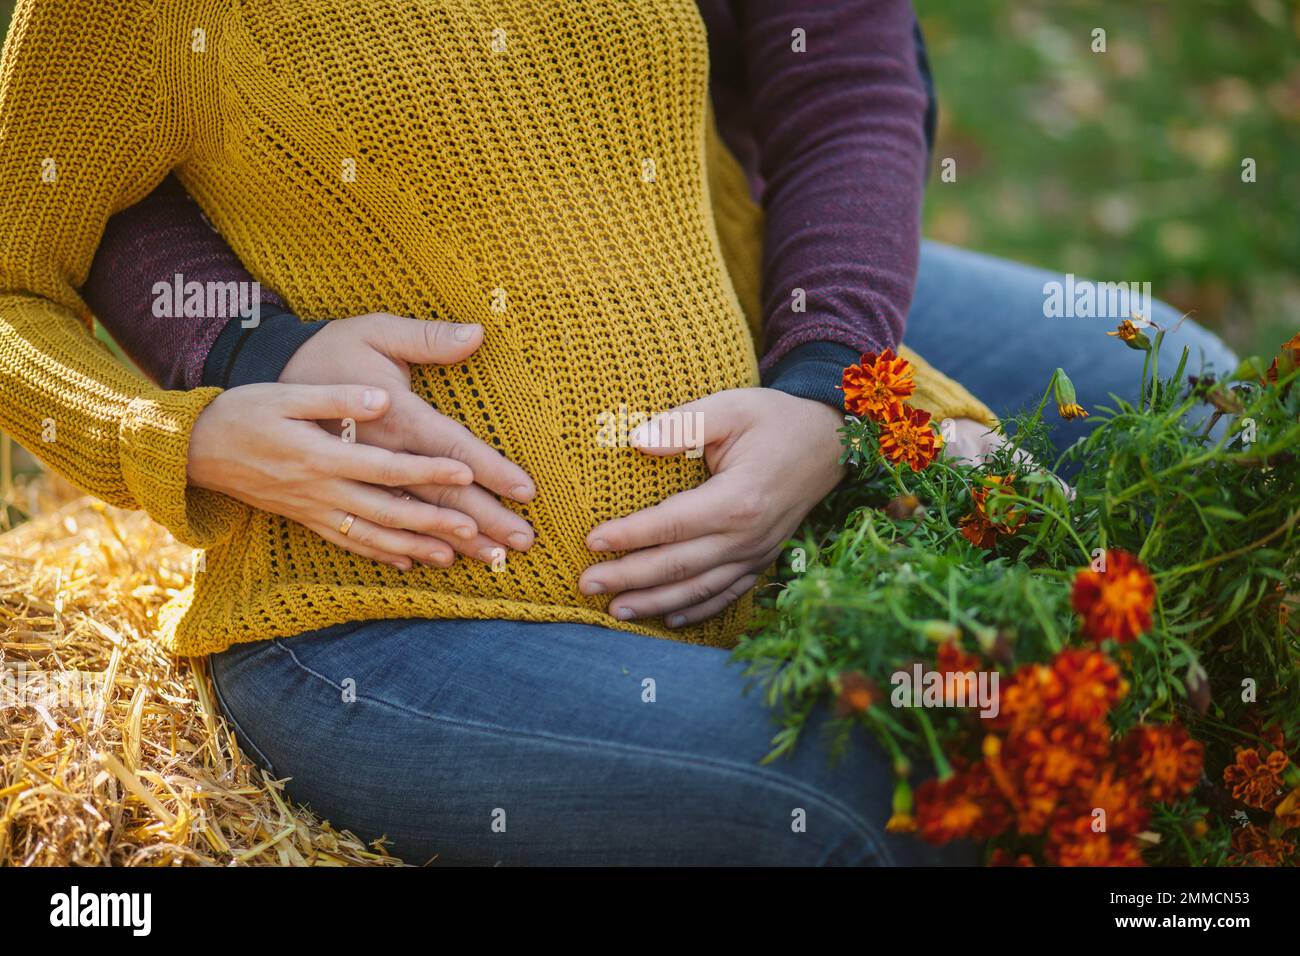 Ein Mann umarmt den Bauch einer schwangeren Frau. Schwangerschaft, Liebe, Familie und Menschen Konzept - Nahaufnahme einer schwangeren Frau, die eine Hand-Herz-Geste auf dem Bauch macht. Stockfoto